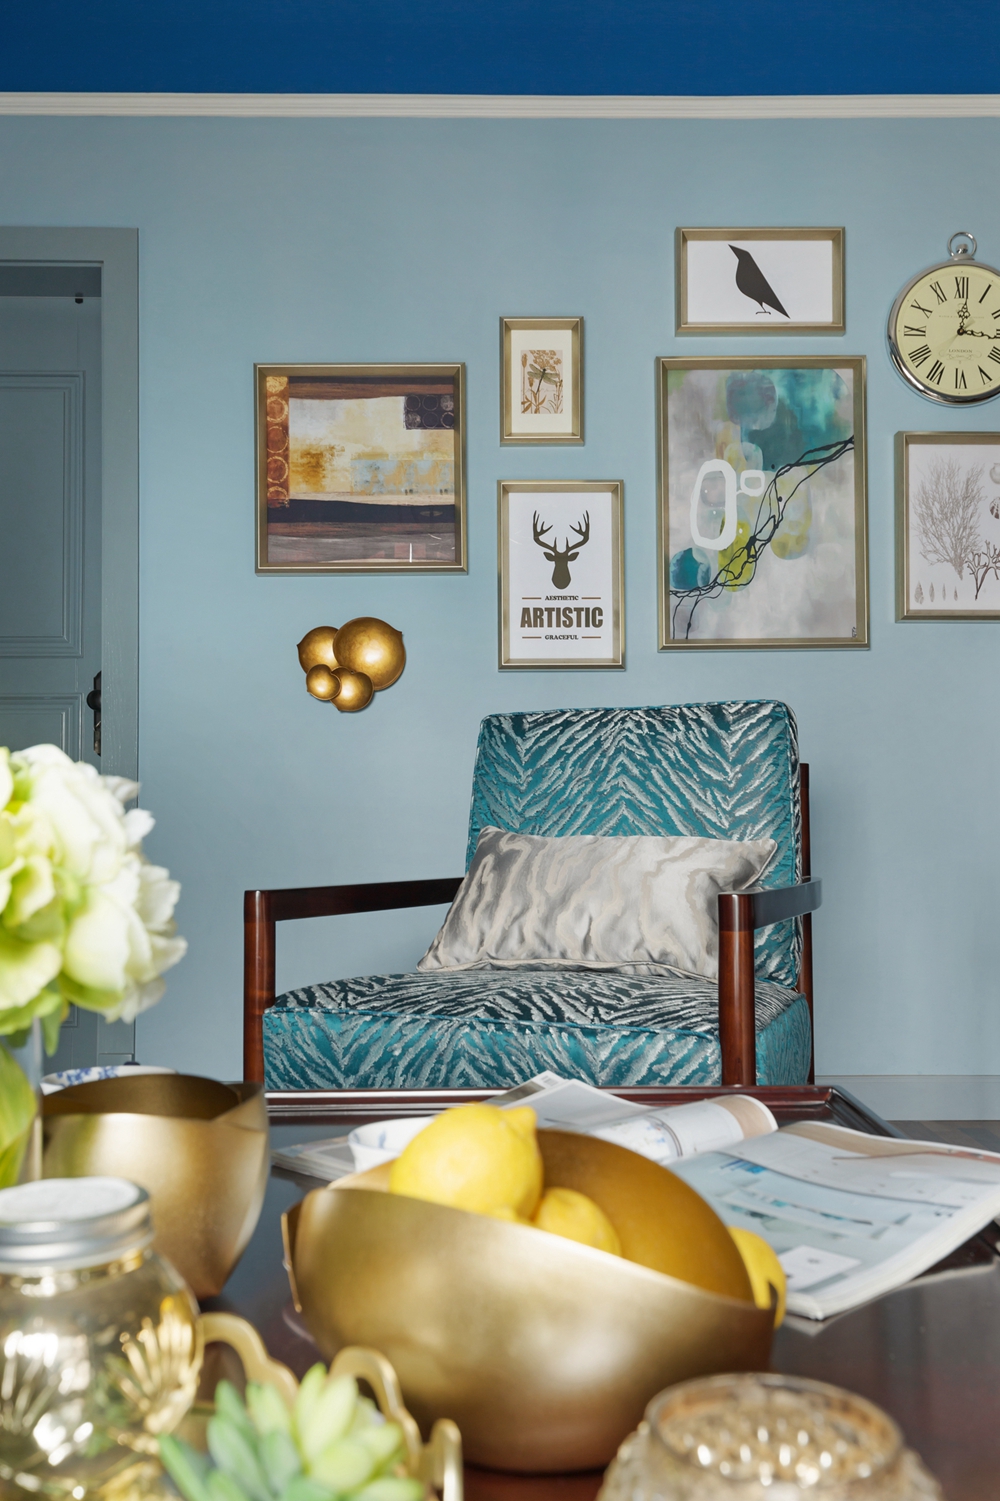 客厅以蓝色为主色，局部设计规则的石膏线，搭配精致的灯饰，客厅的美好生活油然而生。